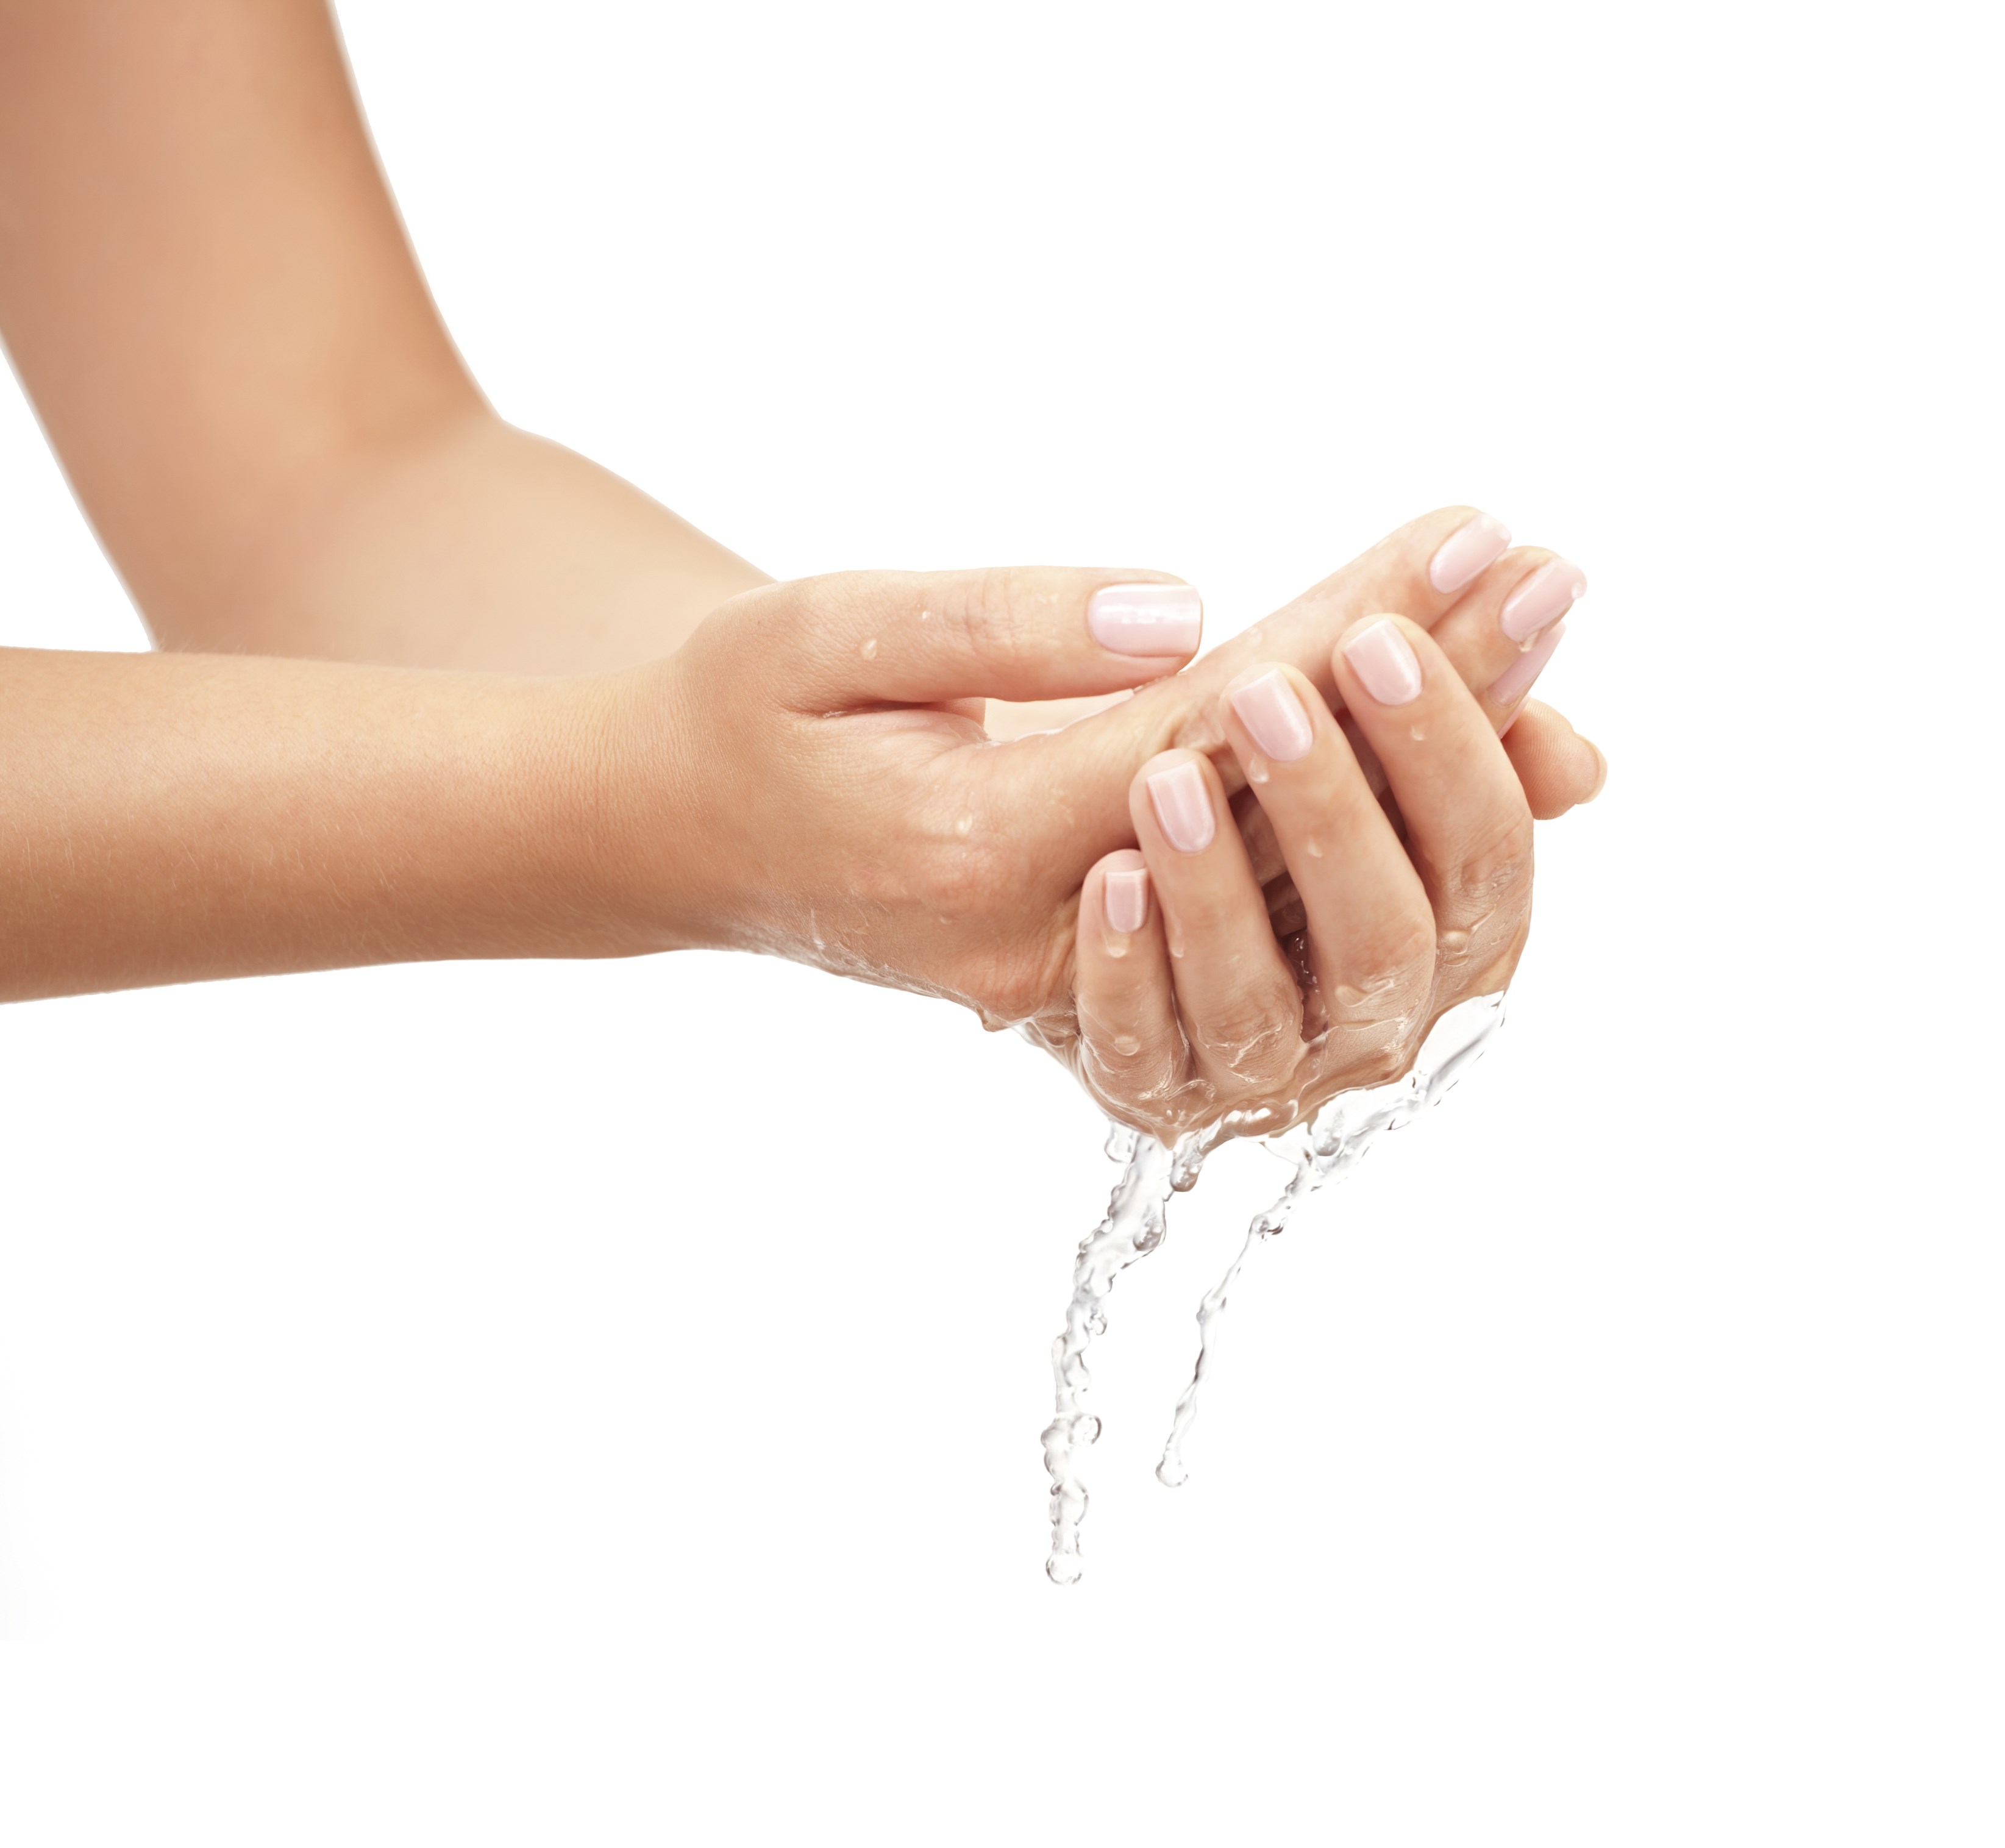 Легко смывается водой. Умывание рук. Чистые руки. Мытье рук на белом фоне. Вода в руках.